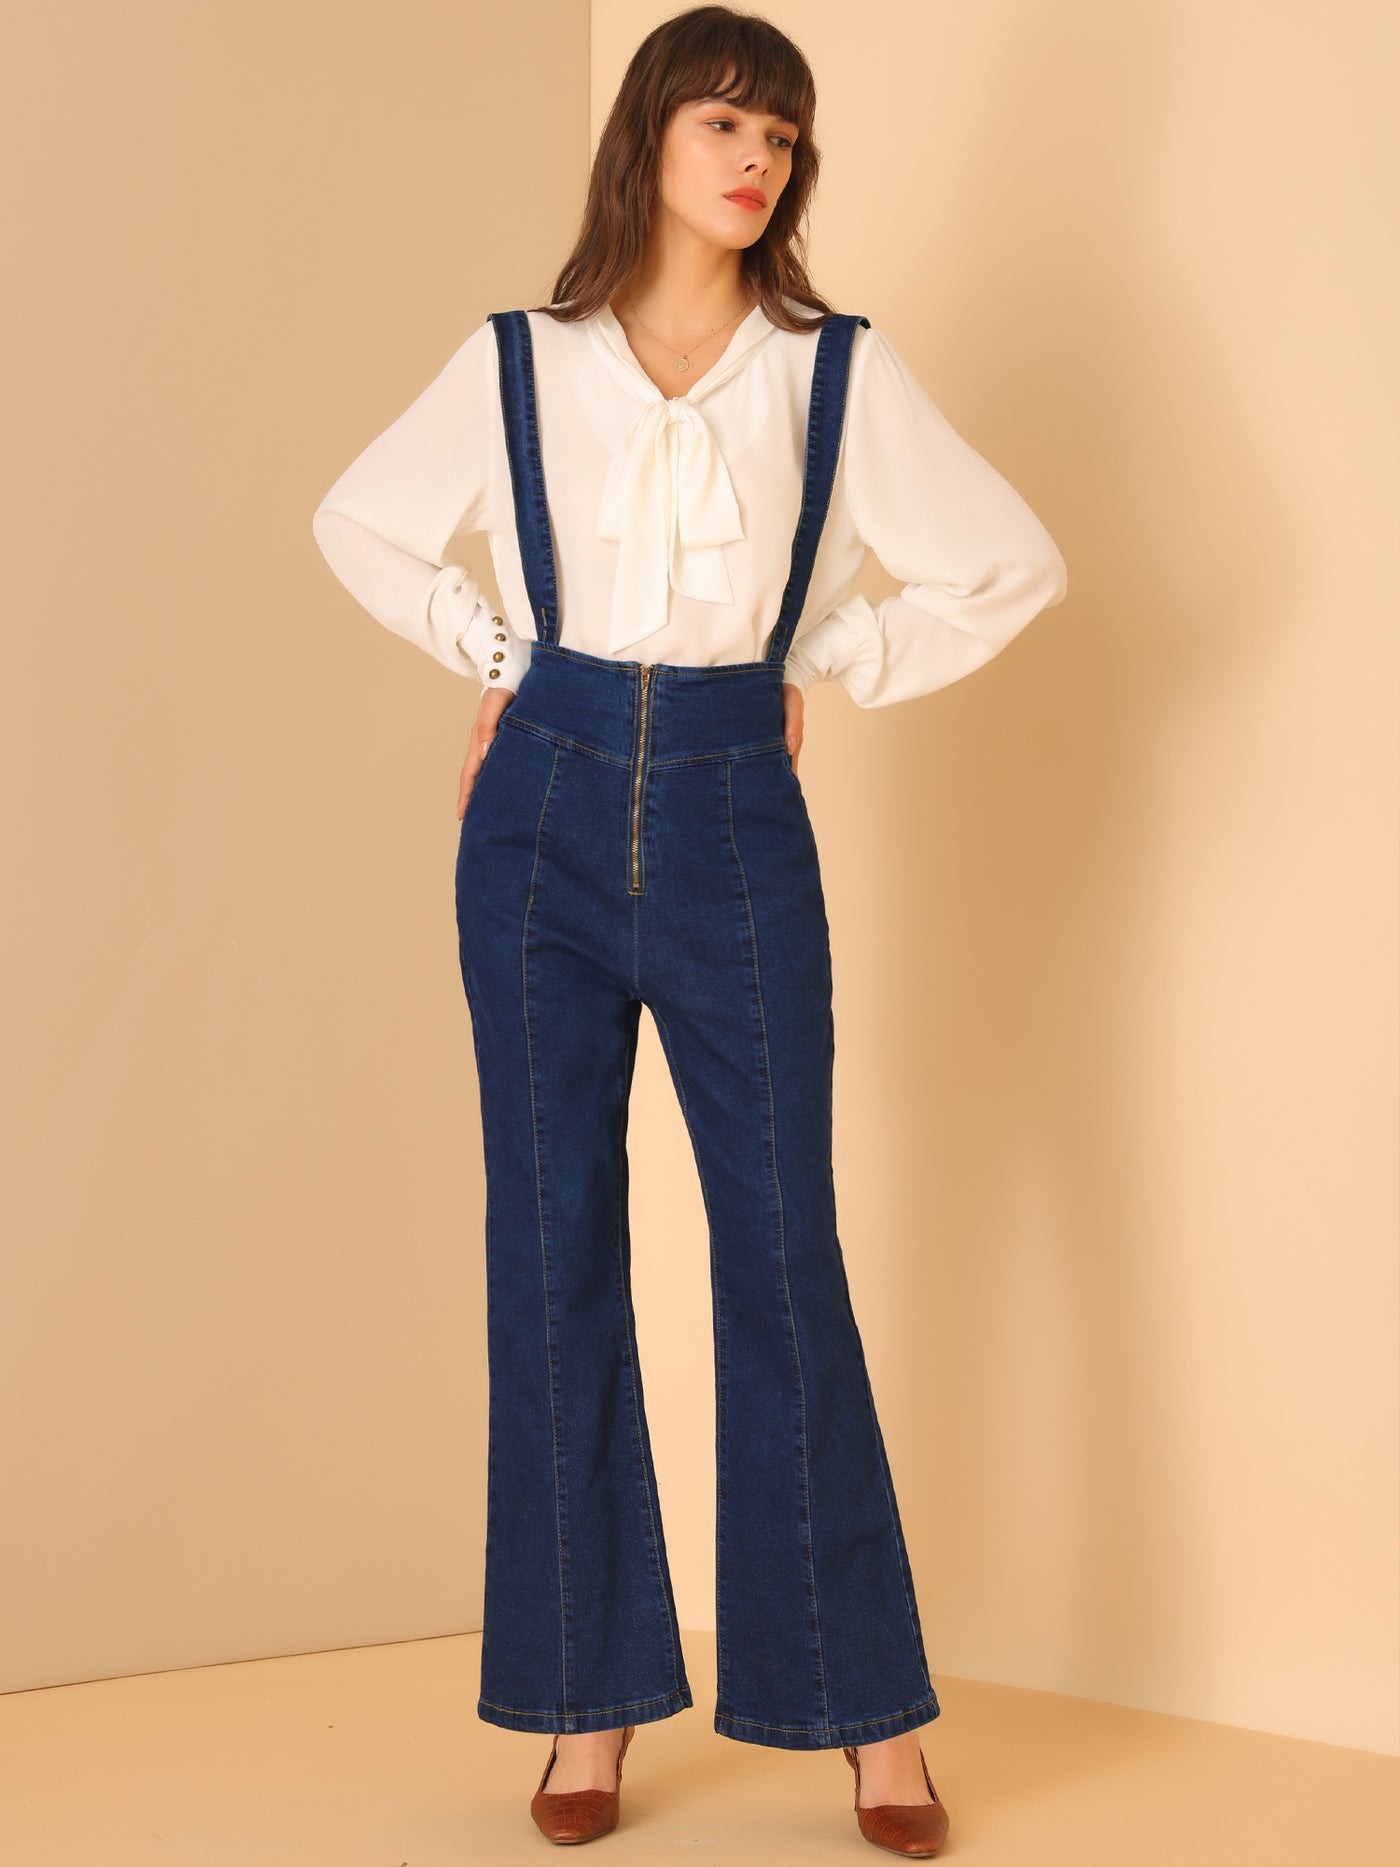 Allegra K Bell Bottoms Overalls Long Vintage Flare Jeans Denim Pants